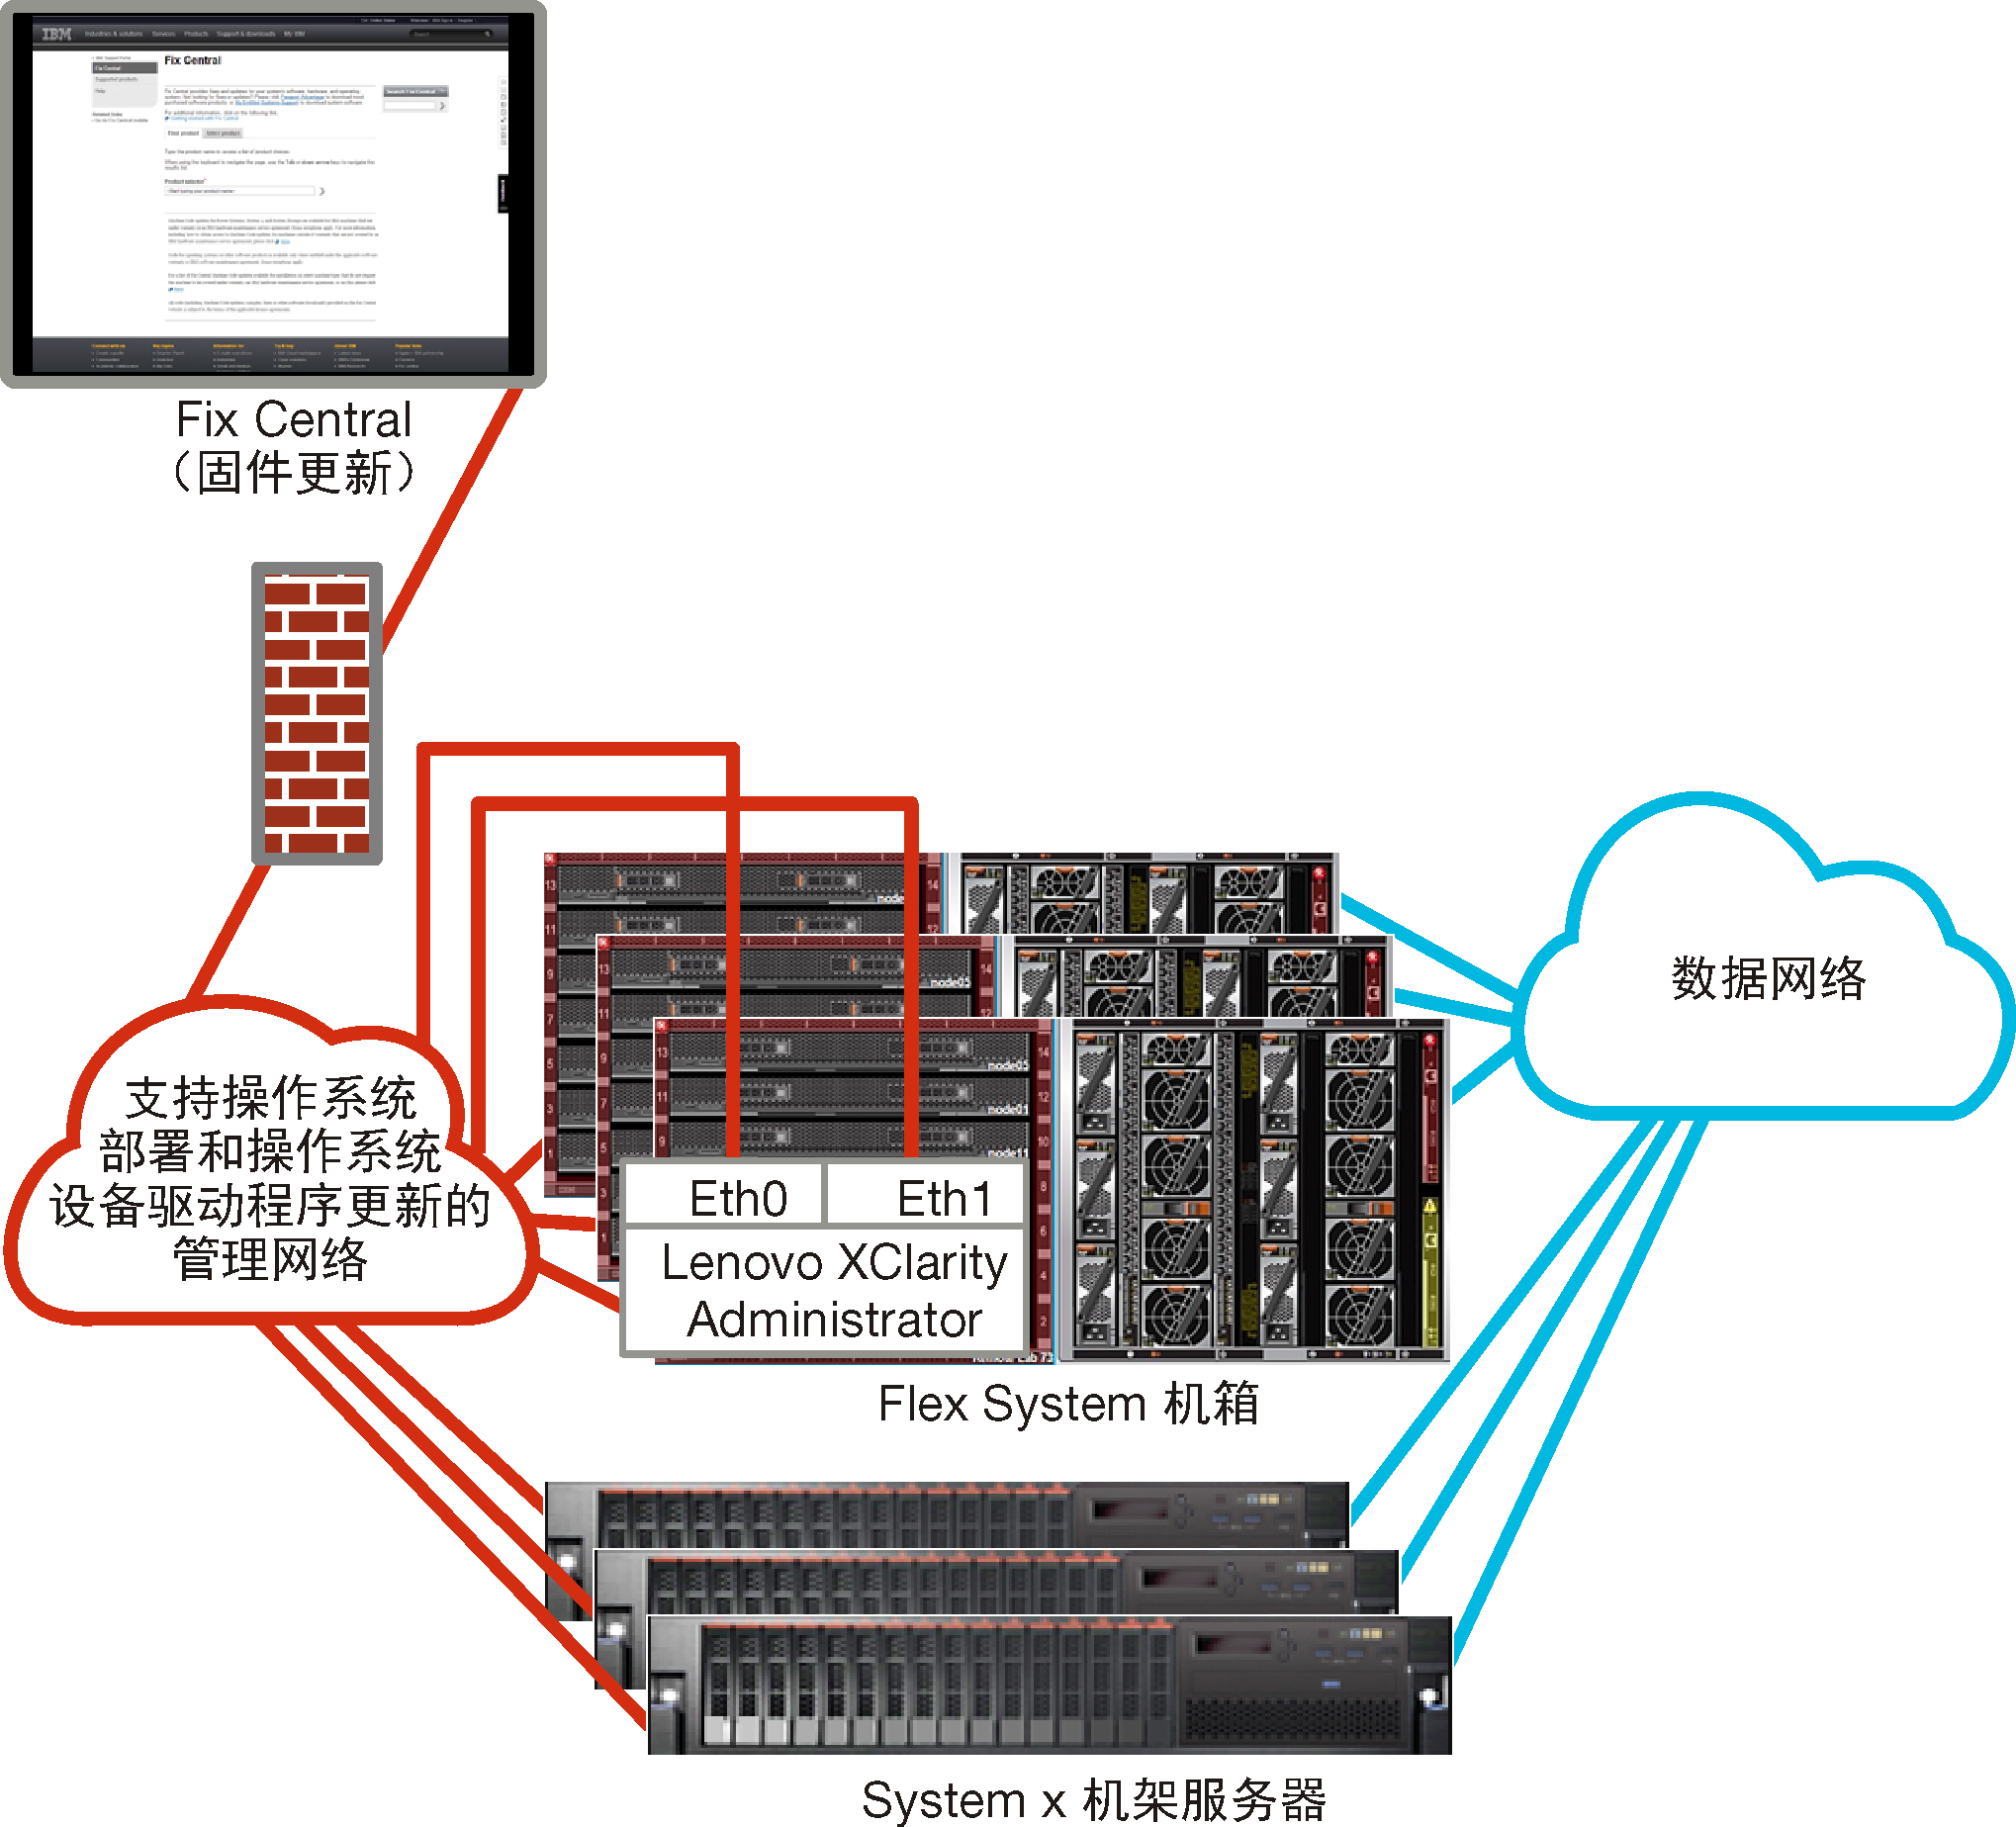 概括地显示虚拟隔离的管理网络和数据网络（其中操作系统网络作为管理网络的一部分）的图形